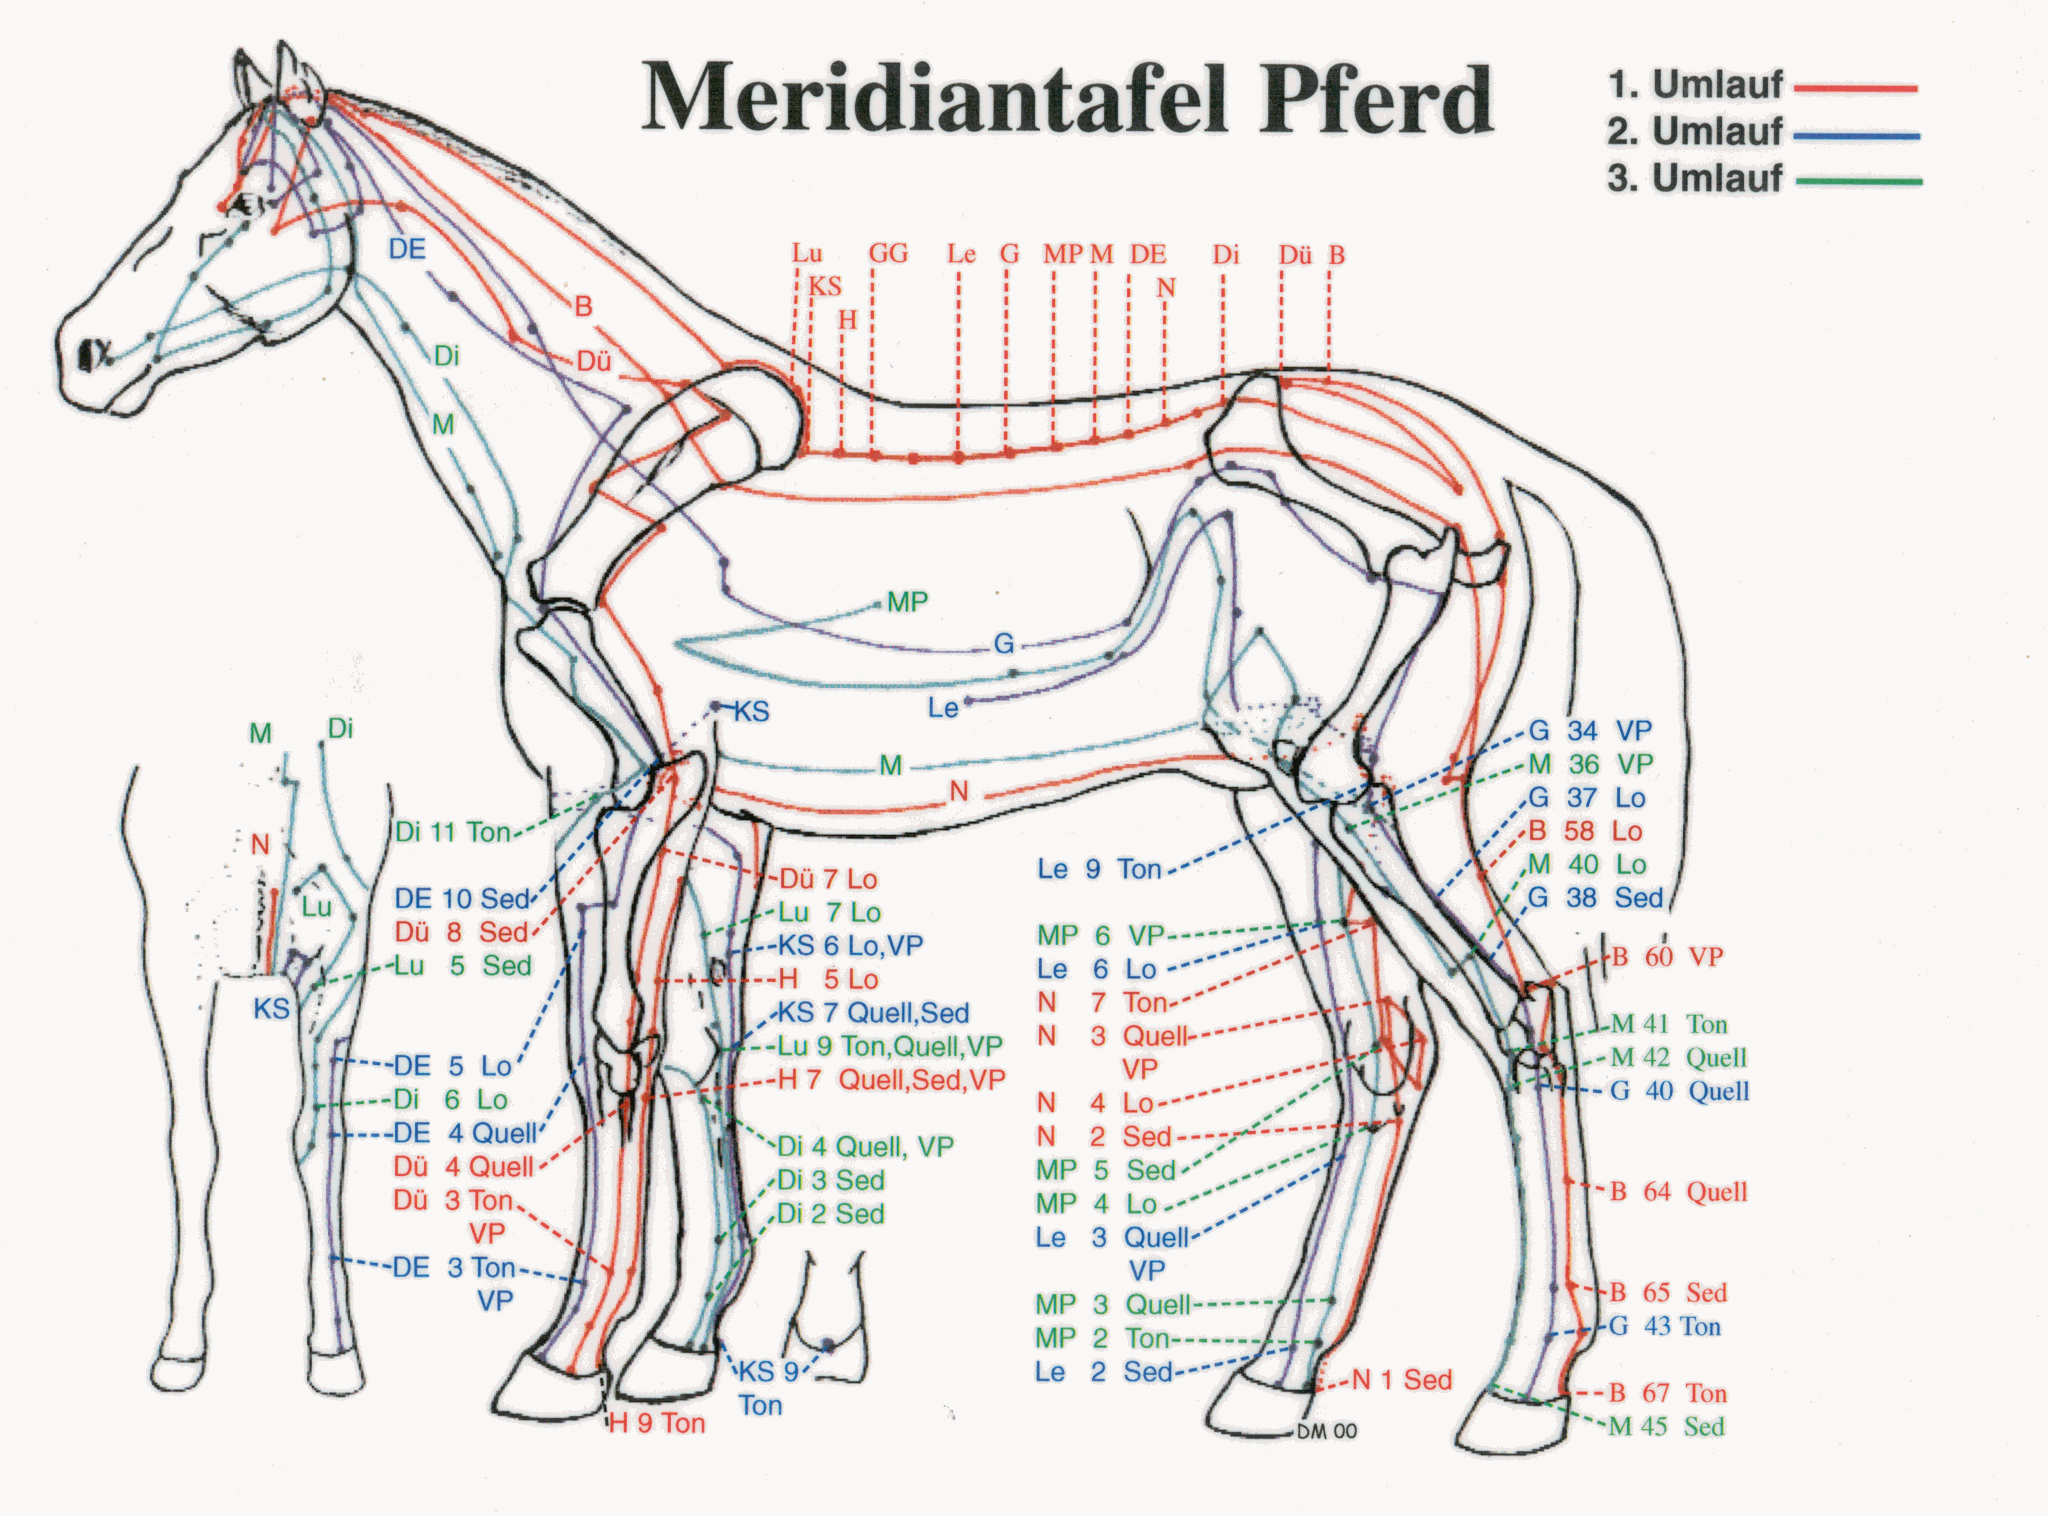 Meridiantafel Pferd